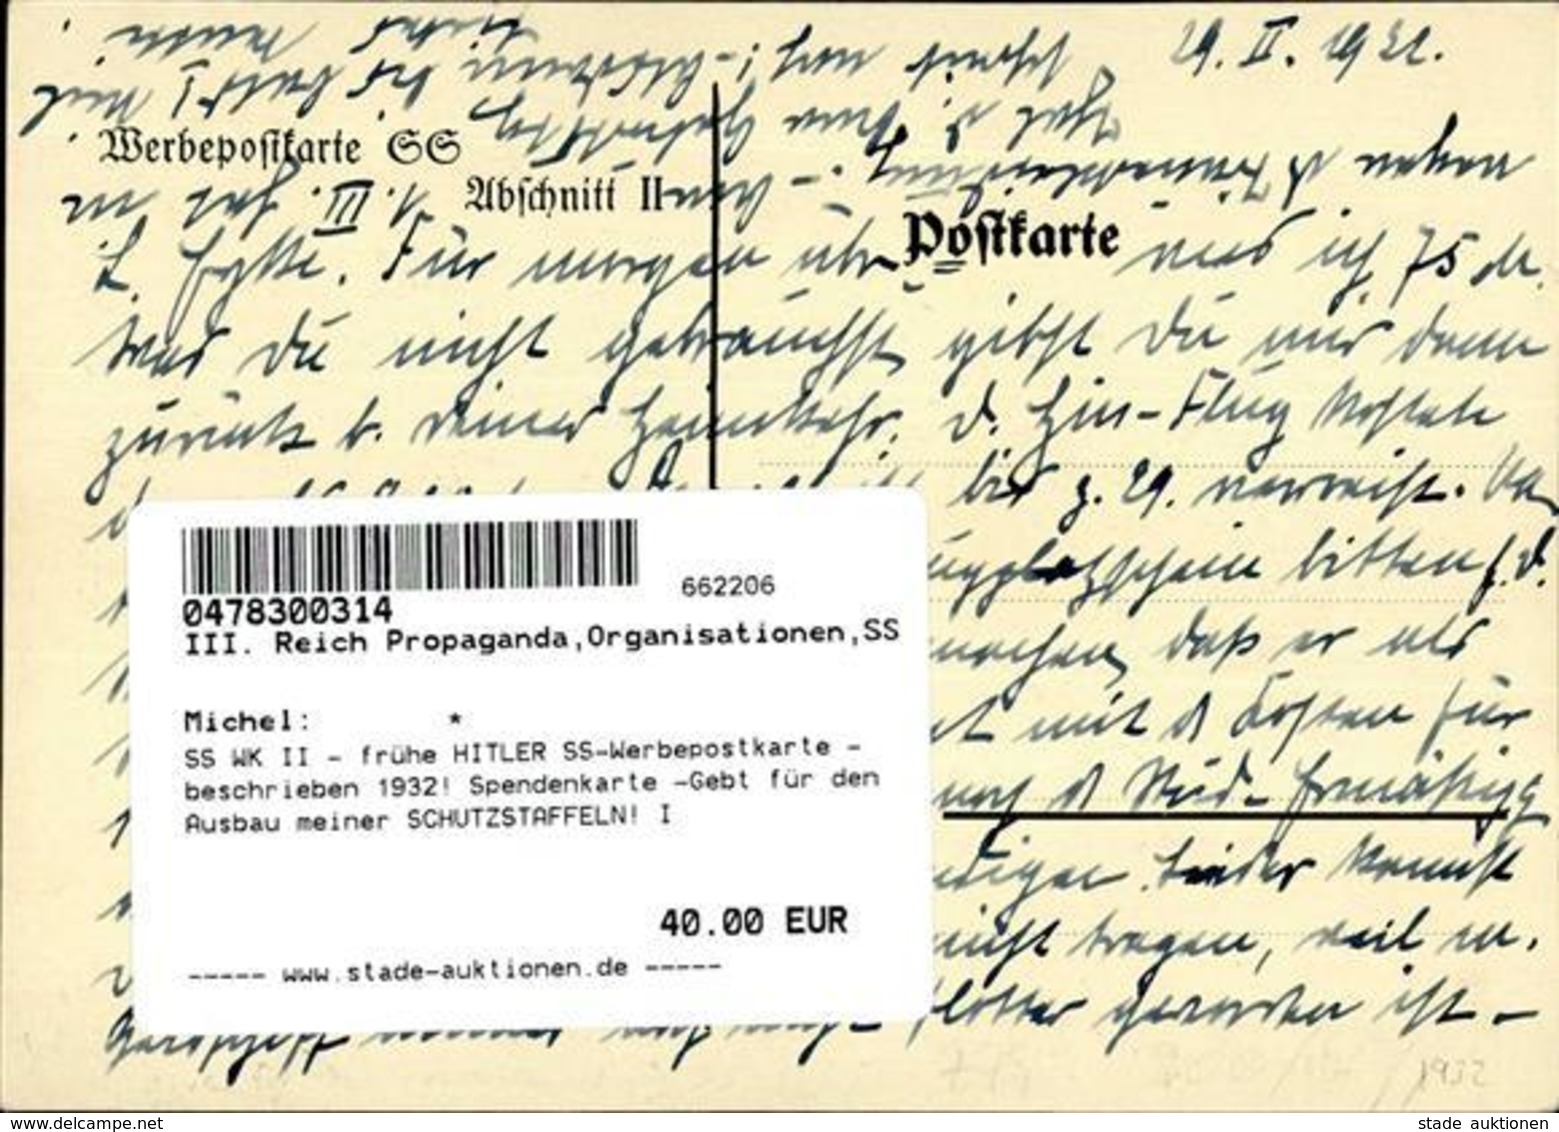 SS WK II - Frühe HITLER SS-Werbepostkarte - Beschrieben 1932! Spendenkarte -Gebt Für Den Ausbau Meiner SCHUTZSTAFFELN! I - War 1939-45